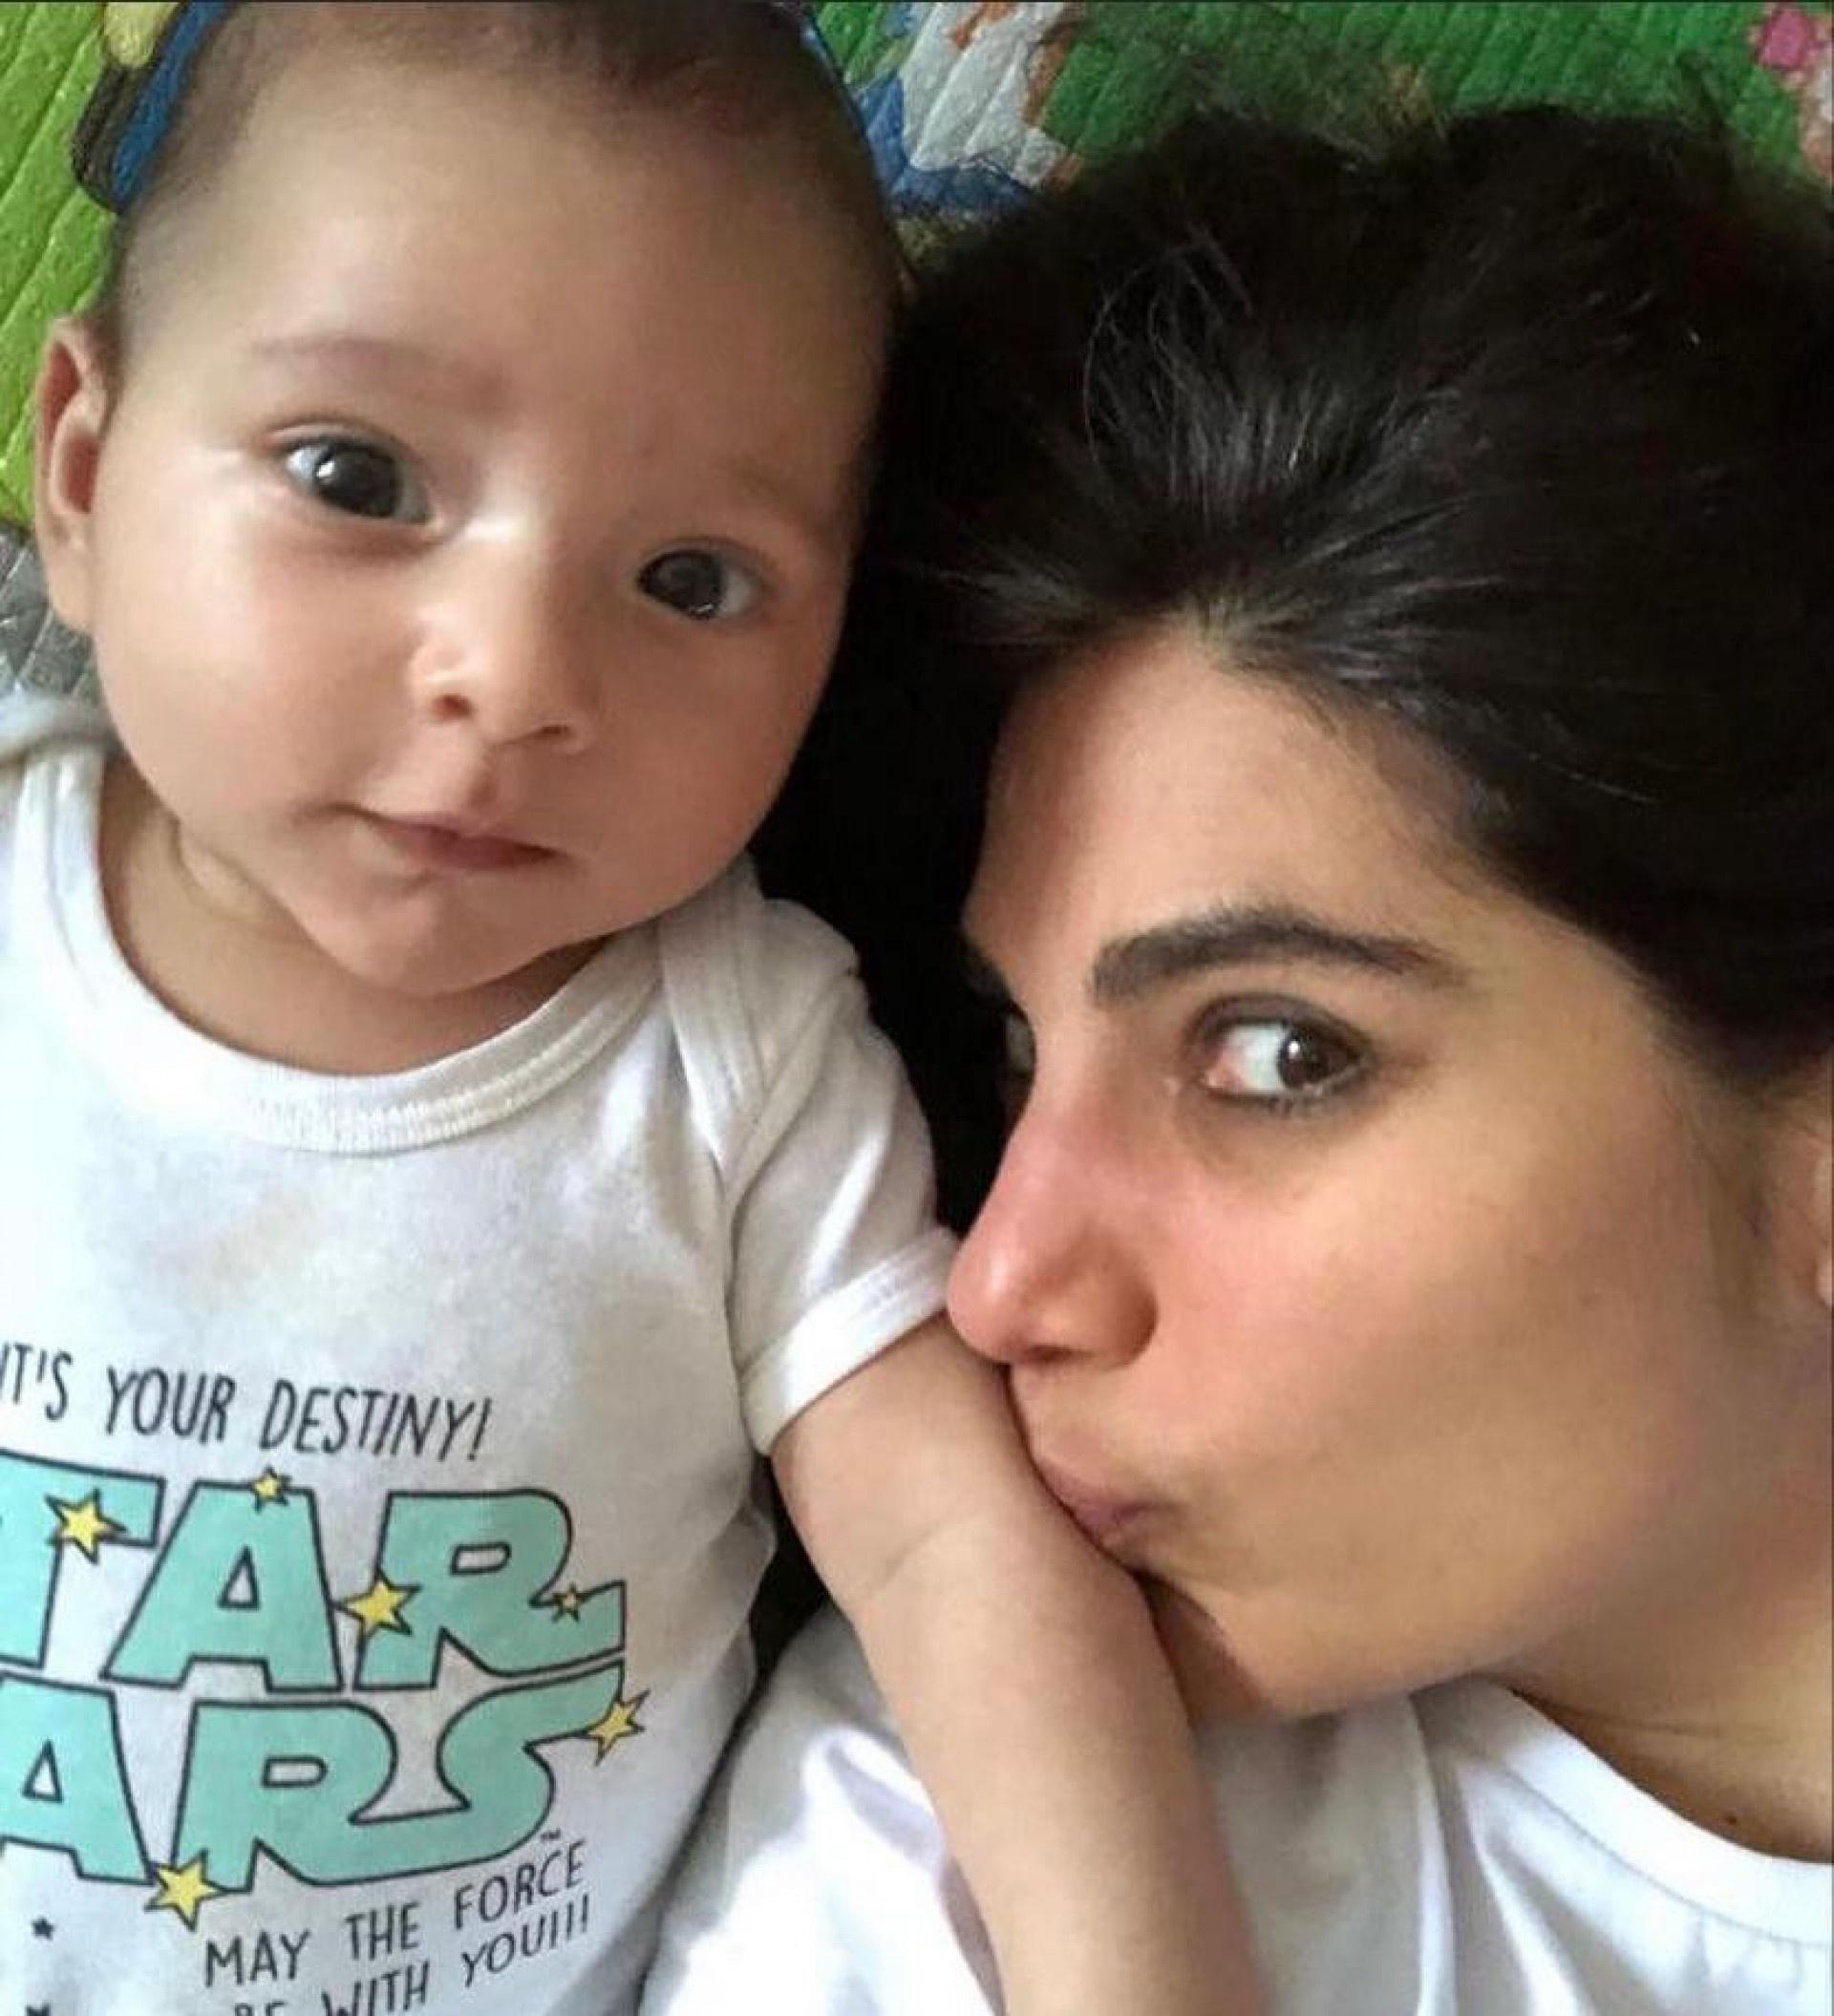 Andréia Sadi revela diálogo com o filho de dois anos: 'Quero